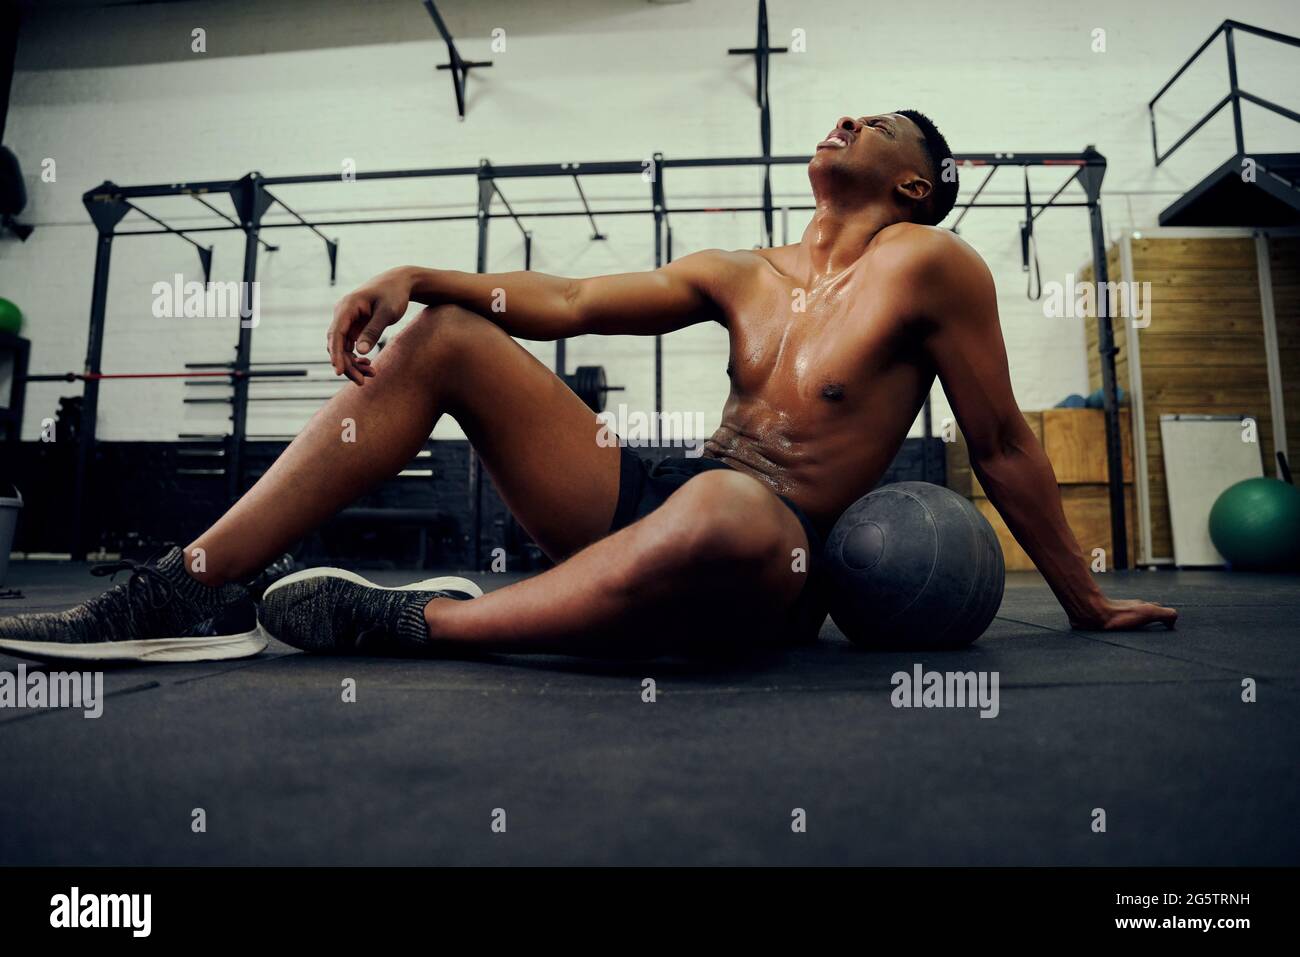 Afroamerikanischer Mann, der sich nach einem intensiven Cross-Training auf dem Hallenboden ausruht. Männlicher Athlet, der nach dem Training erschöpft aussieht. Hohe Qualität Stockfoto